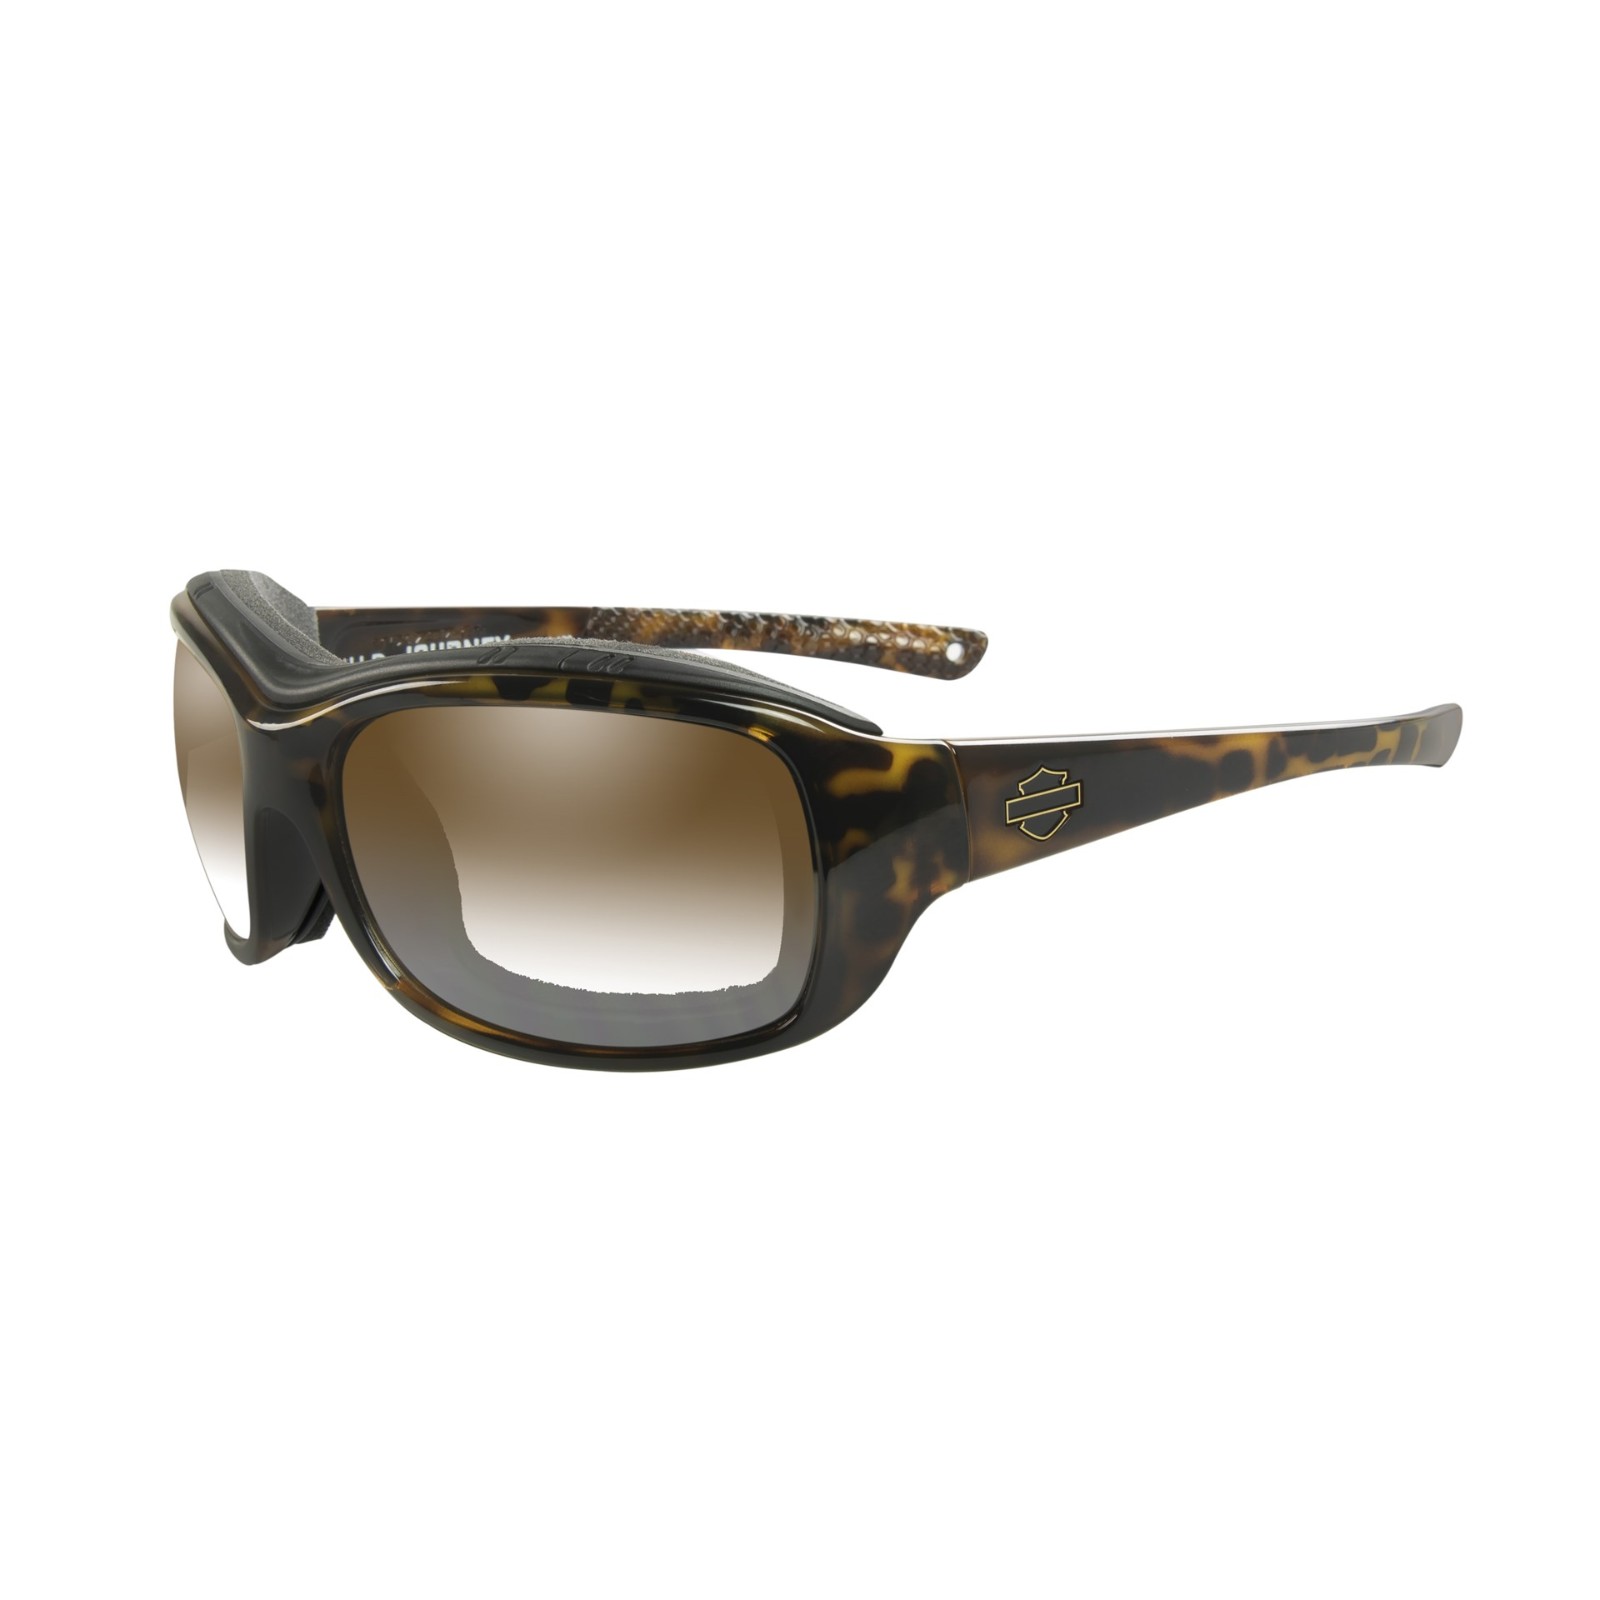 Harley Davidson Leesbril van 3,50 Donkerbruin/ Goud HD1025 052 0,25 tot Accessoires Zonnebrillen & Eyewear Leesbrillen 